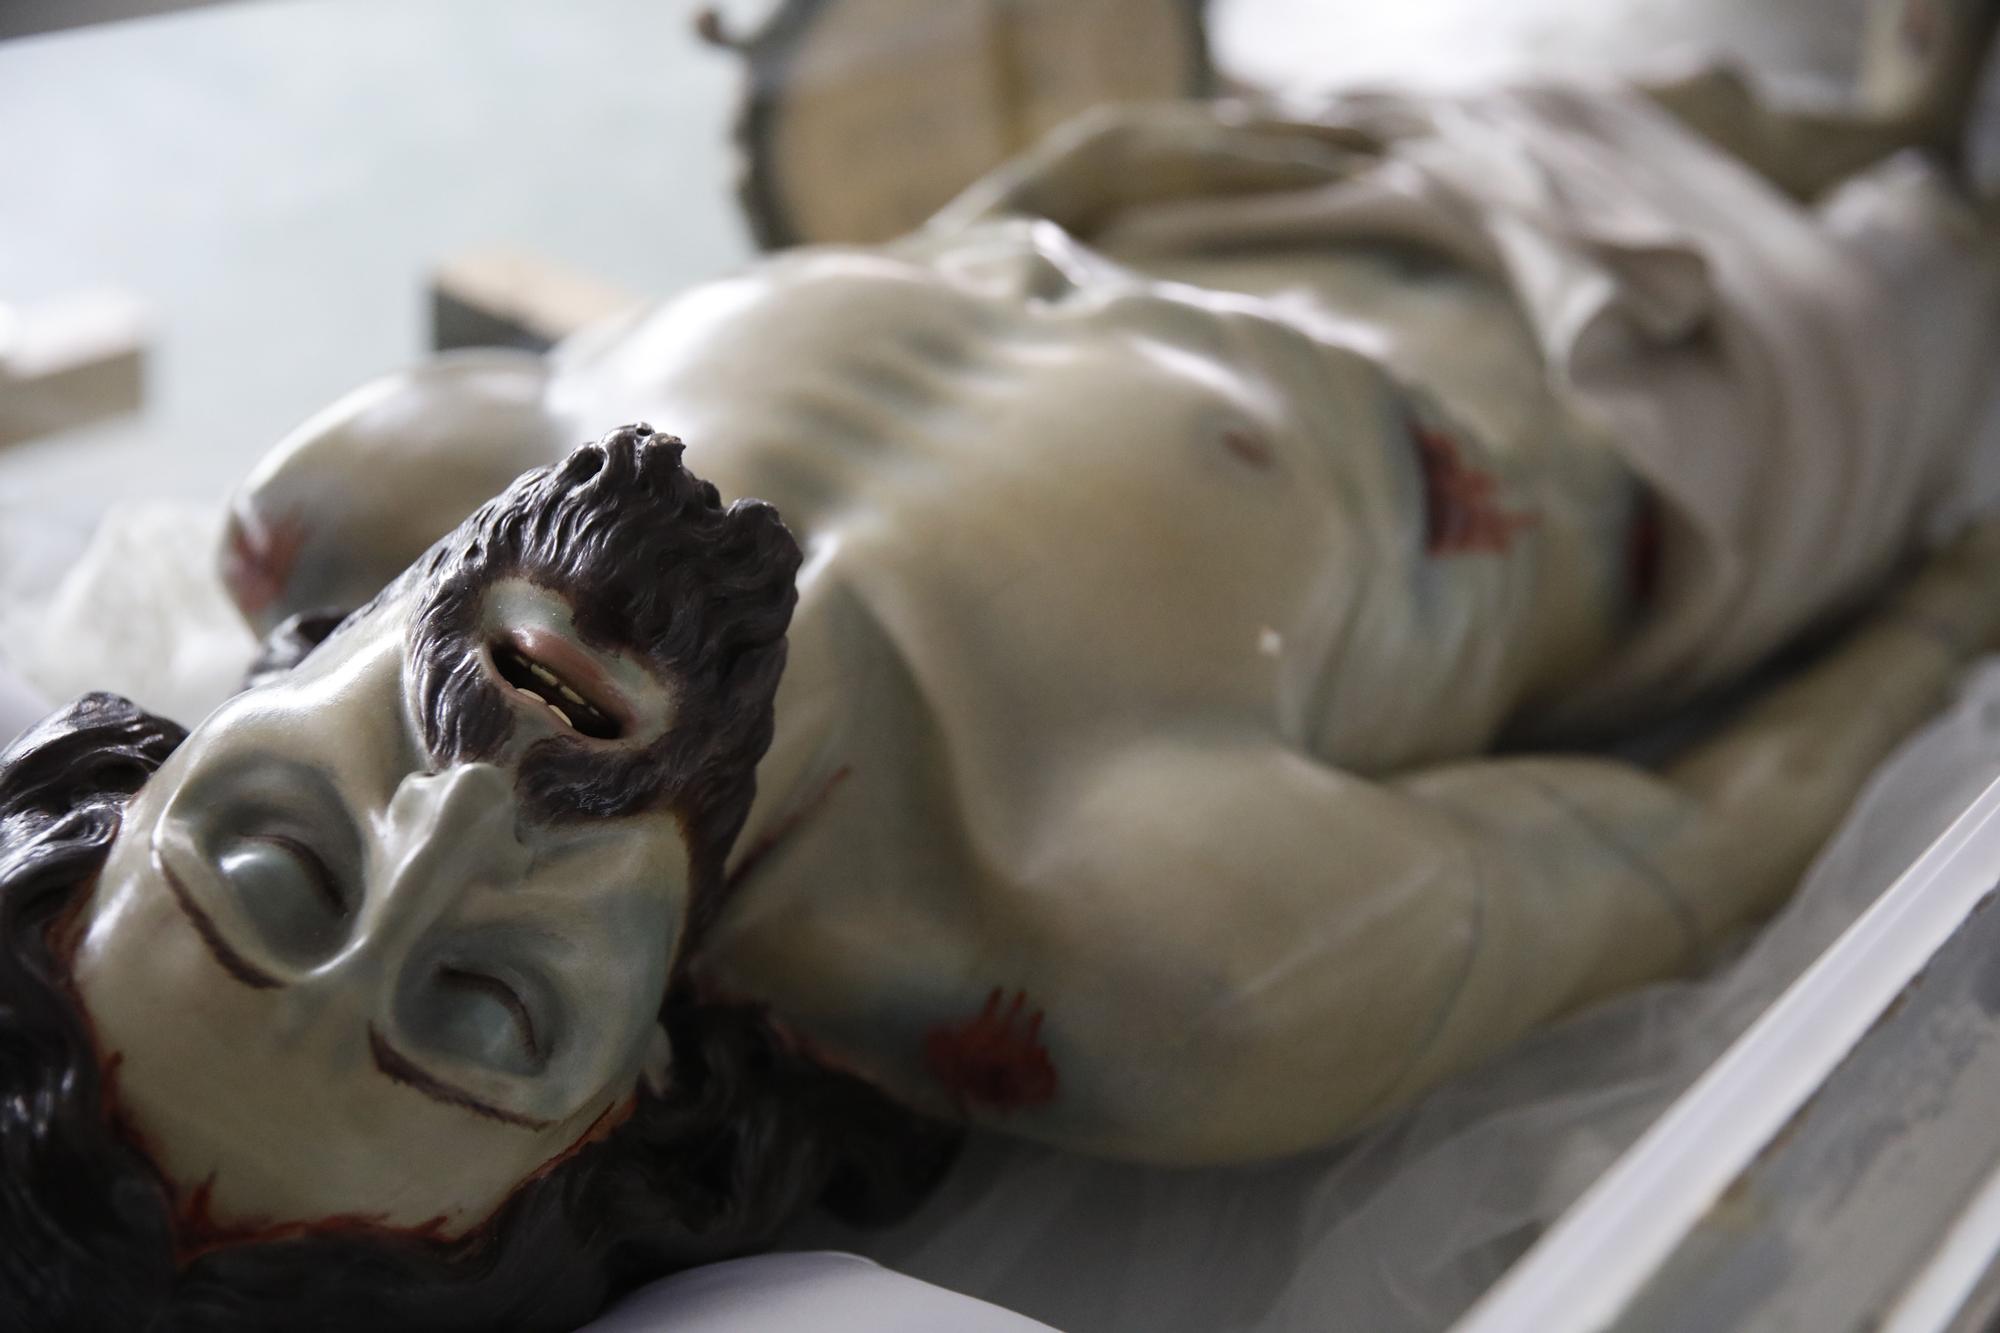 Las “joyas” que salen en procesión: así son las imágenes más destacadas de la Semana Santa de Gijón